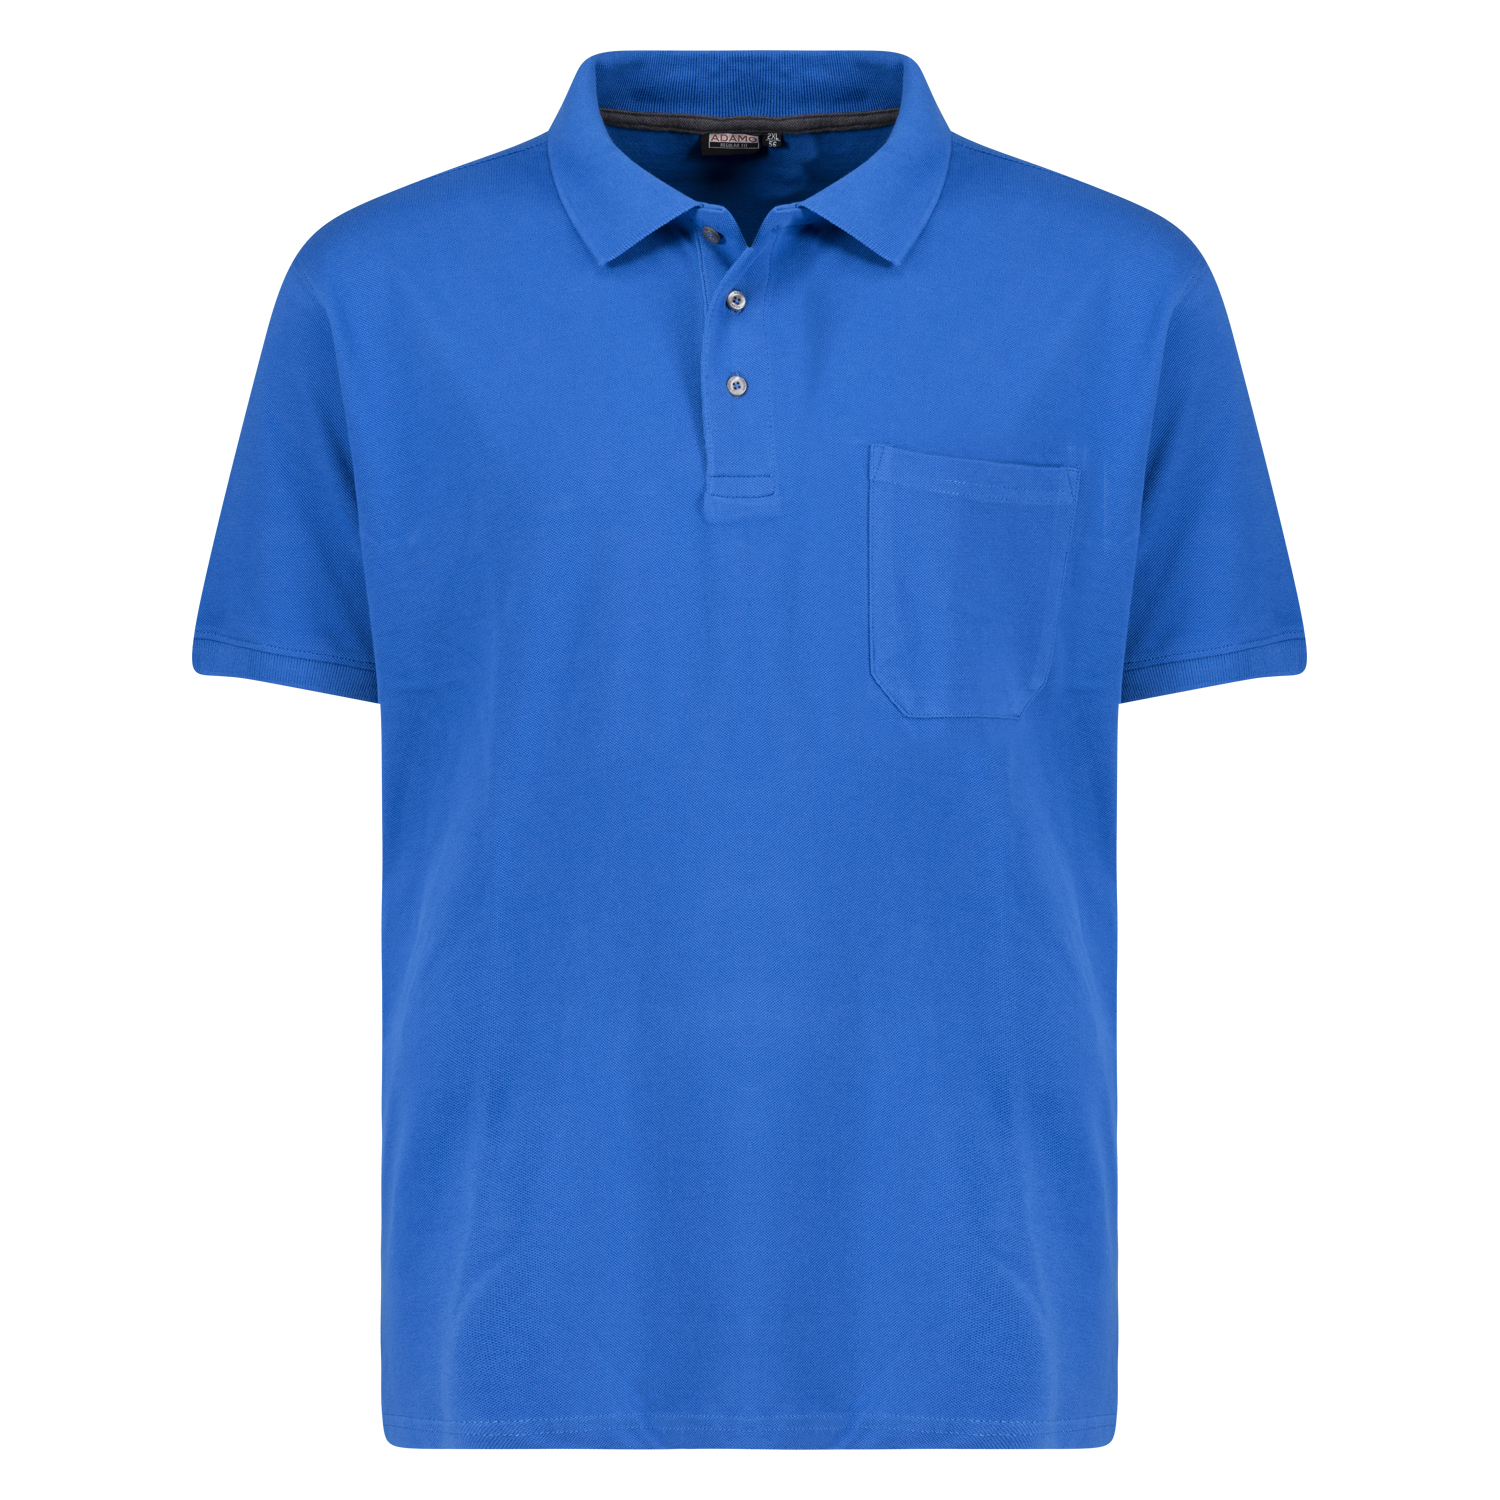 Herren Pique Poloshirt REGULAR FIT kurzarm Serie KLAAS von Adamo azurblau in Übergrößen 2XL - 10XL